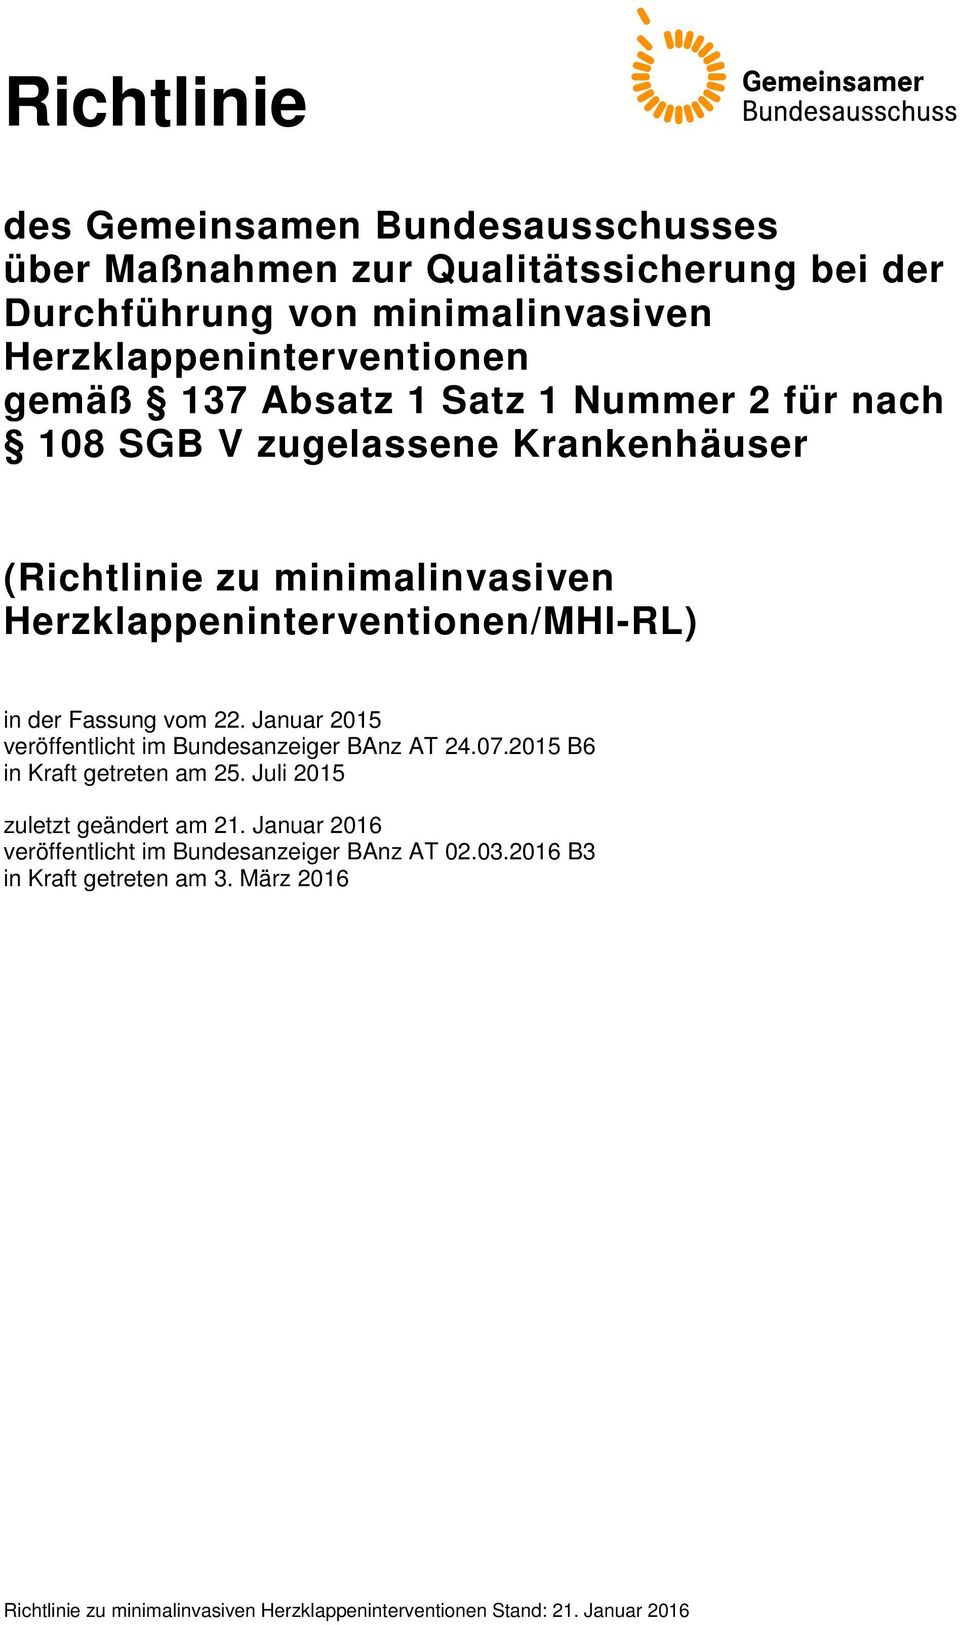 minimalinvasiven Herzklappeninterventionen/MHI-RL) in der Fassung vom 22. Januar 2015 veröffentlicht im Bundesanzeiger BAnz AT 24.07.